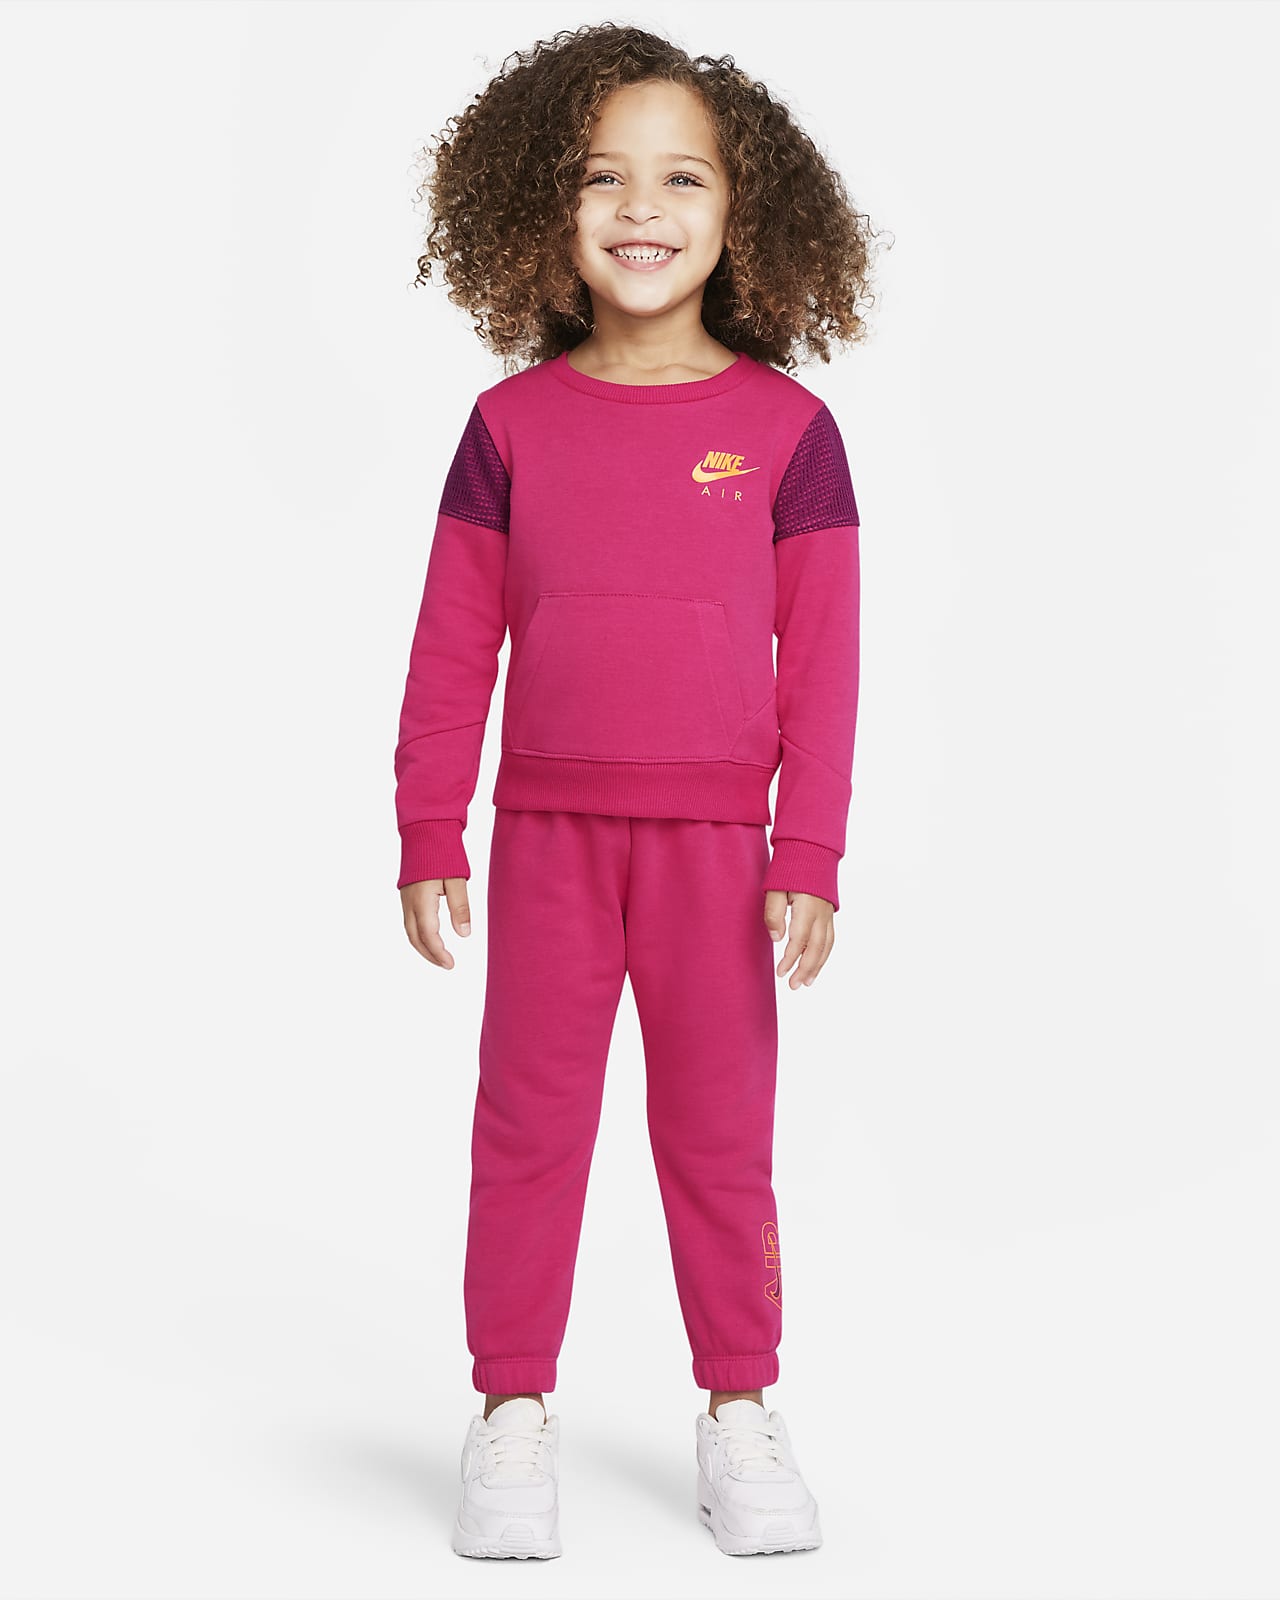 Nike Set aus Rundhalsshirt und Hose für Kleinkinder